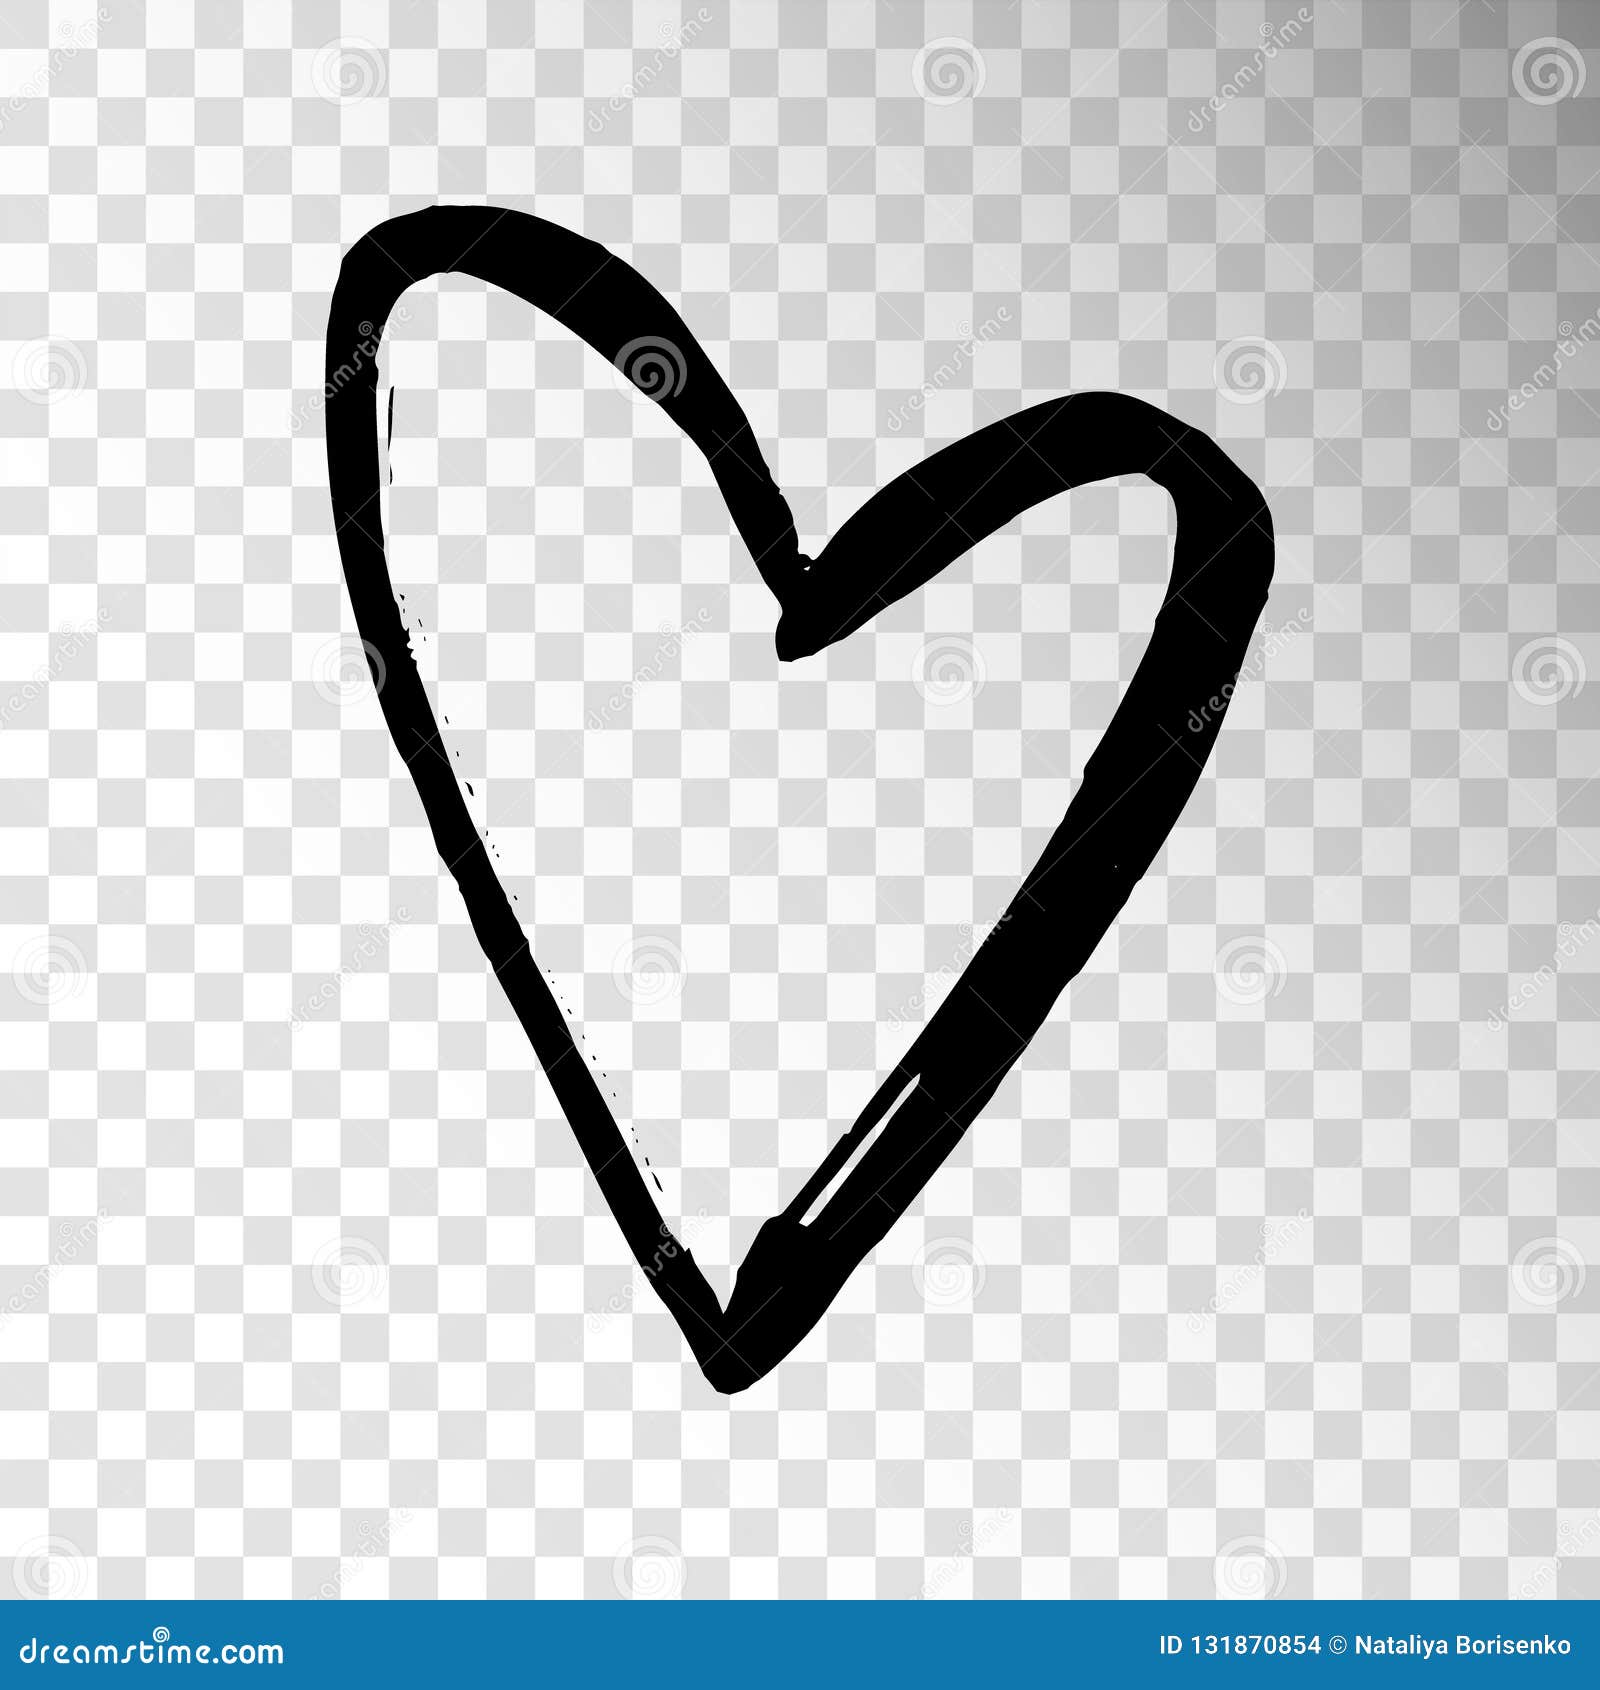 Hand drawn heart' Sticker